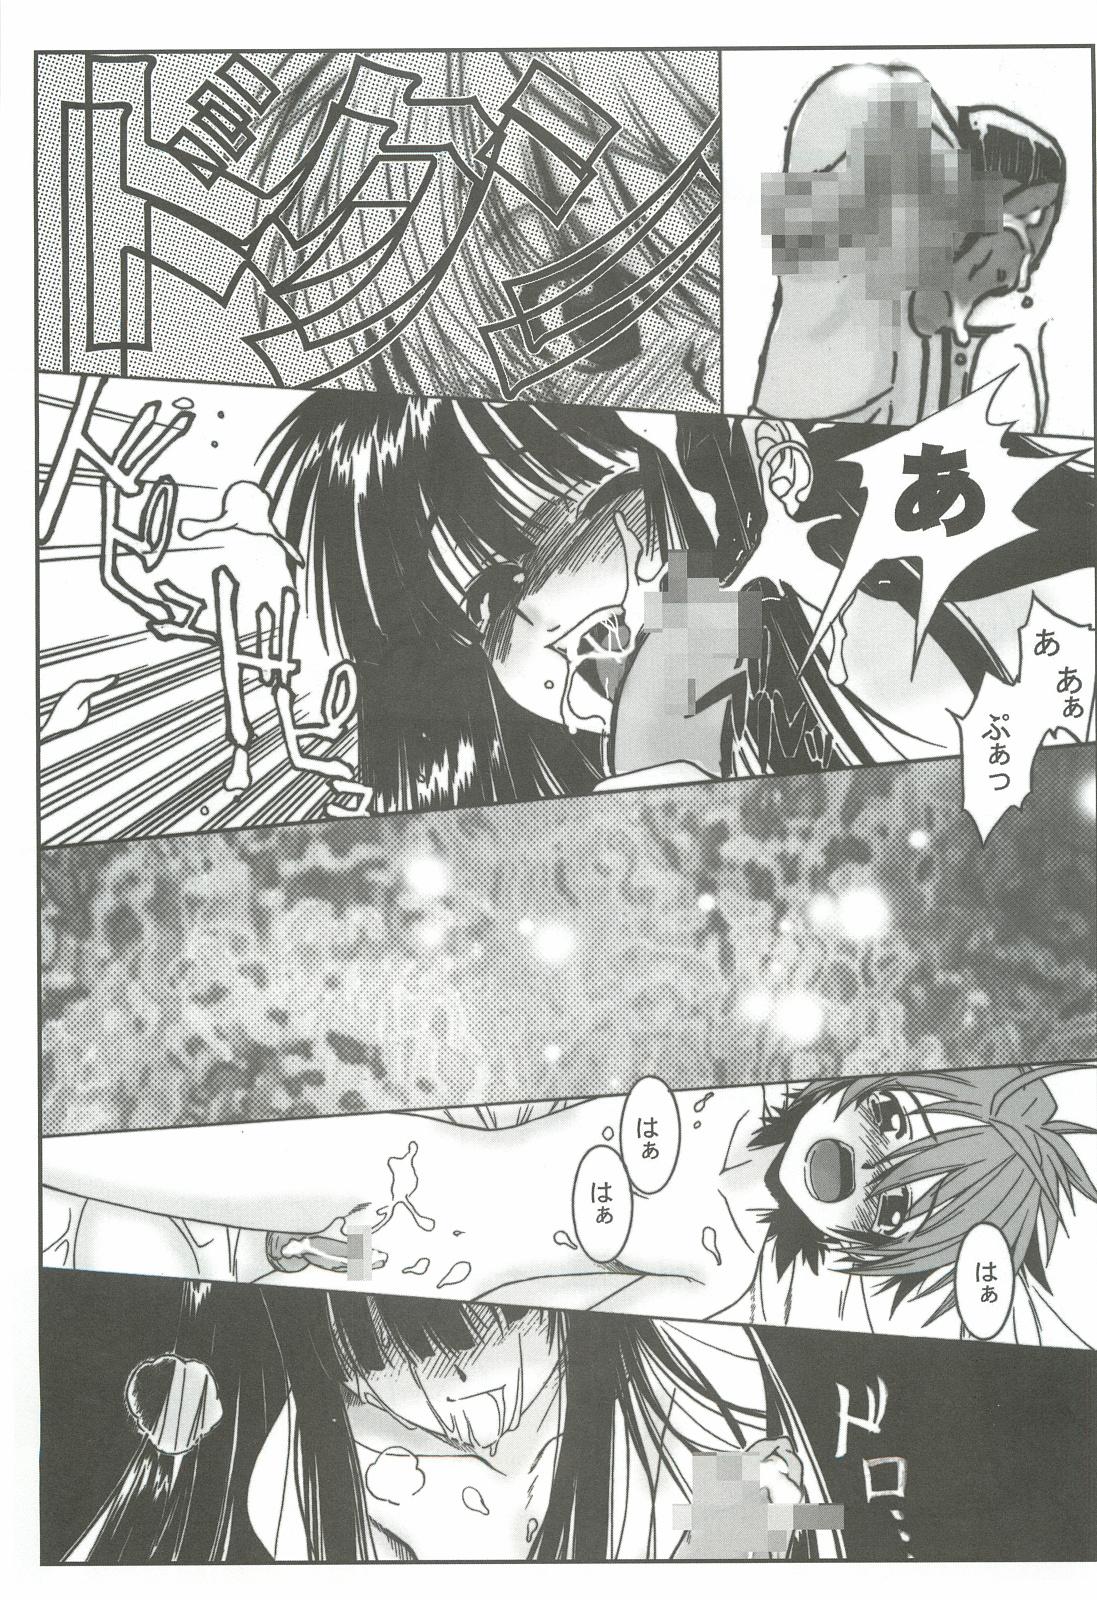 Girls Getting Fucked Zoku Nangoku Shuka - Mahou sensei negima Love hina Salope - Page 10